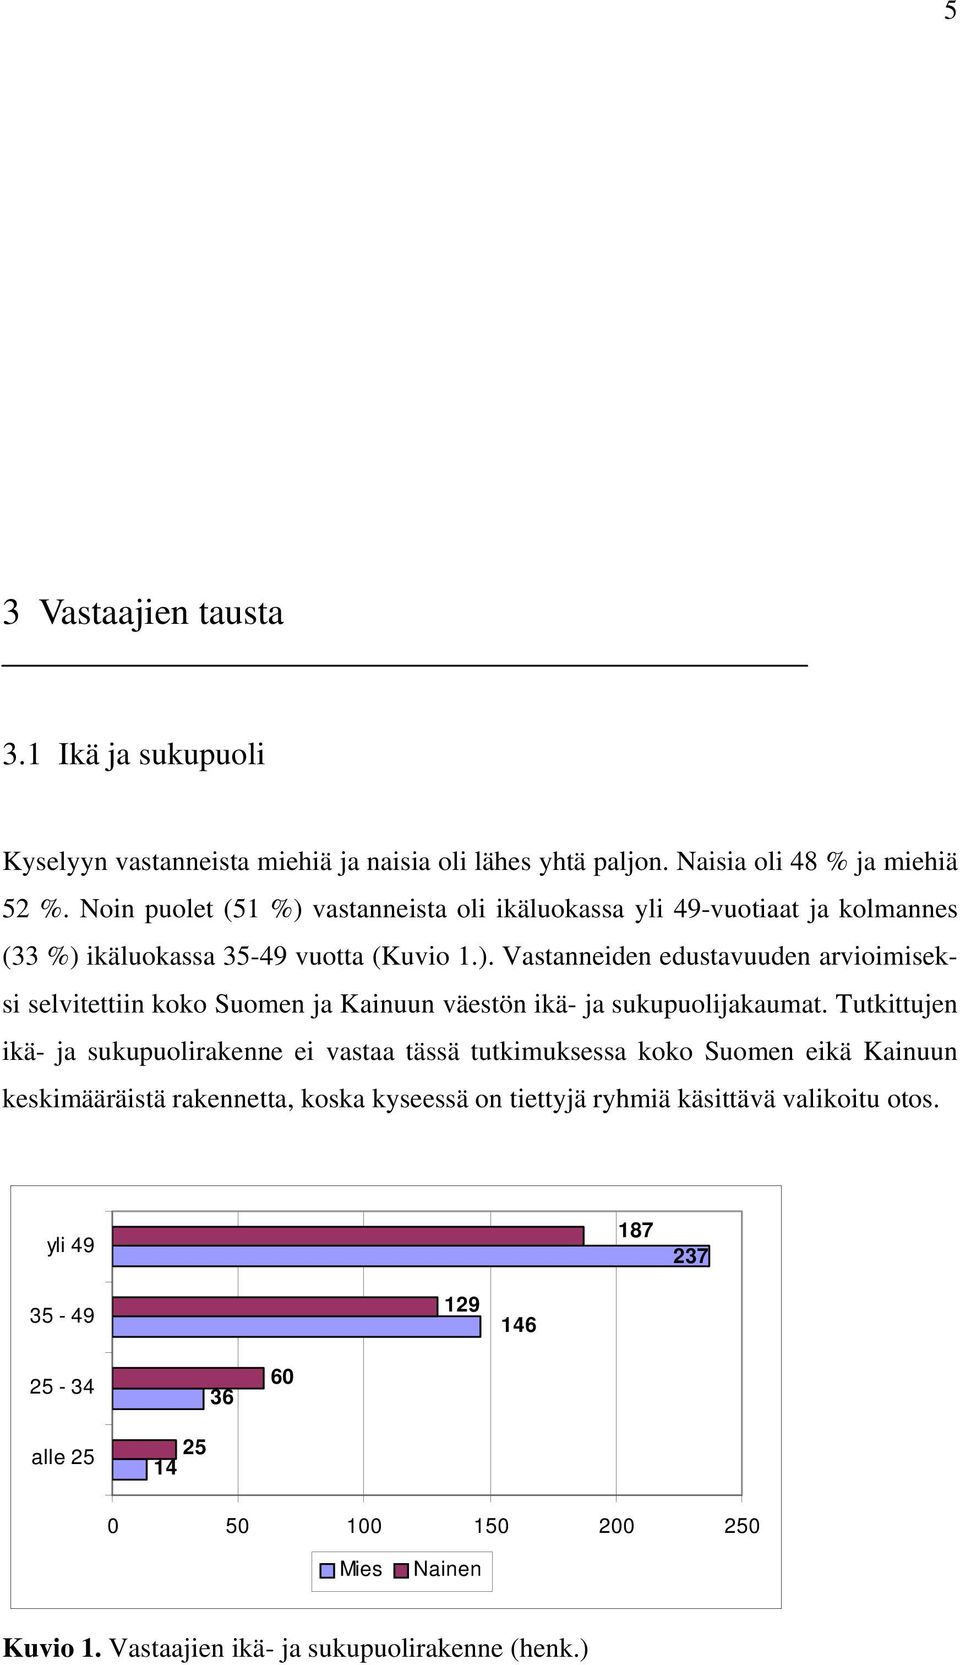 Tutkittujen ikä- ja sukupuolirakenne ei vastaa tässä tutkimuksessa koko Suomen eikä Kainuun keskimääräistä rakennetta, koska kyseessä on tiettyjä ryhmiä käsittävä